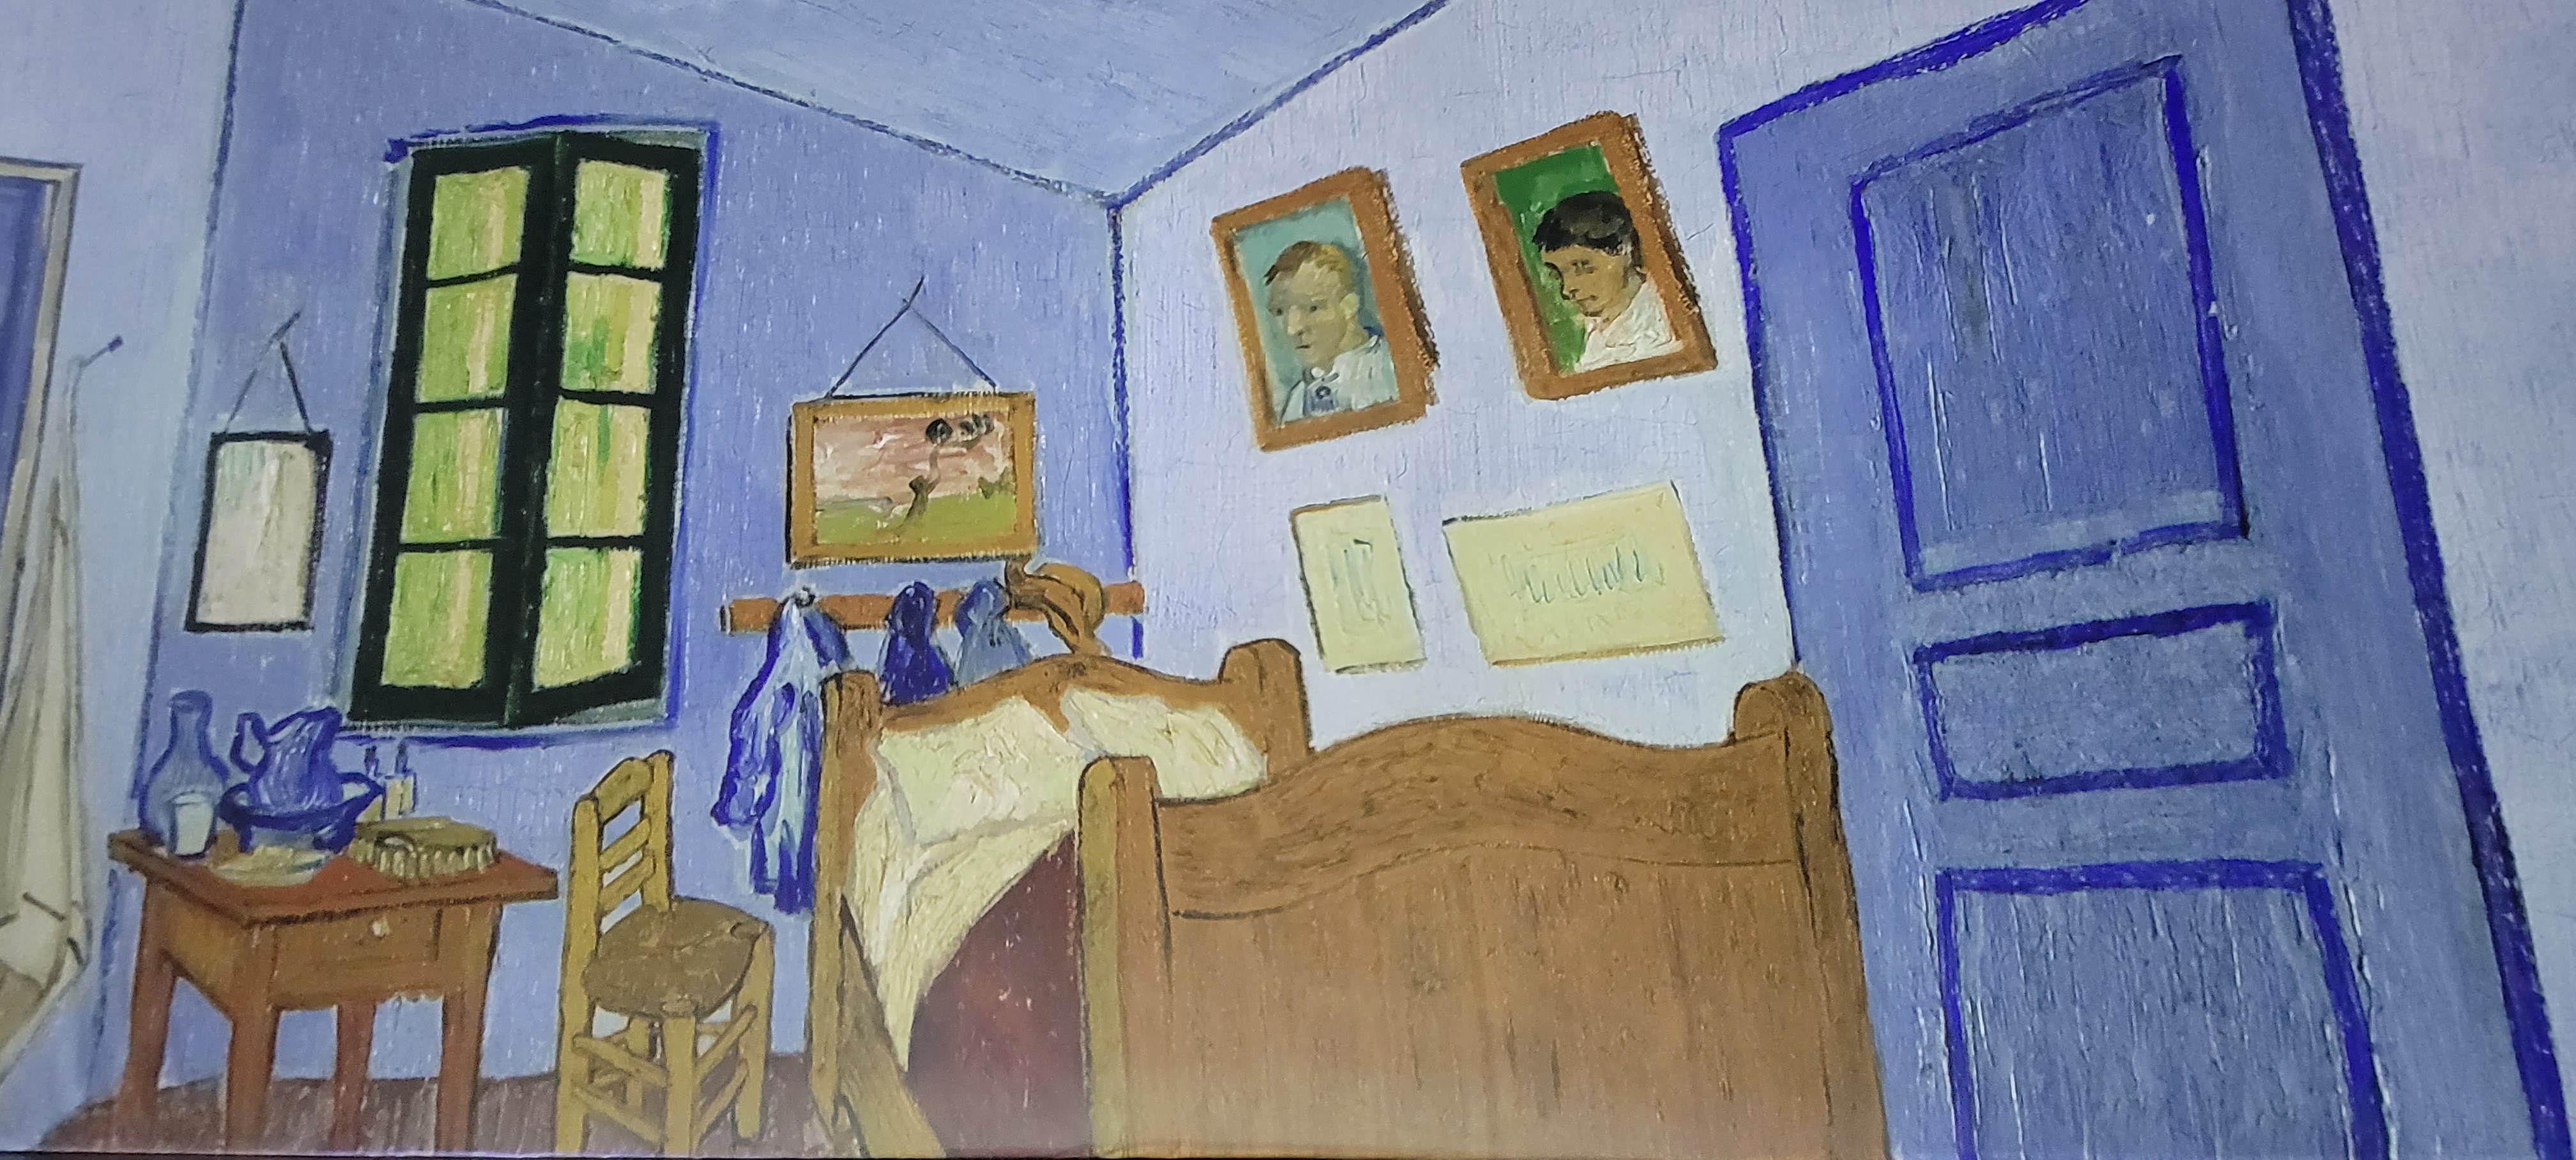 Van Gogh - Bedroom in Arles